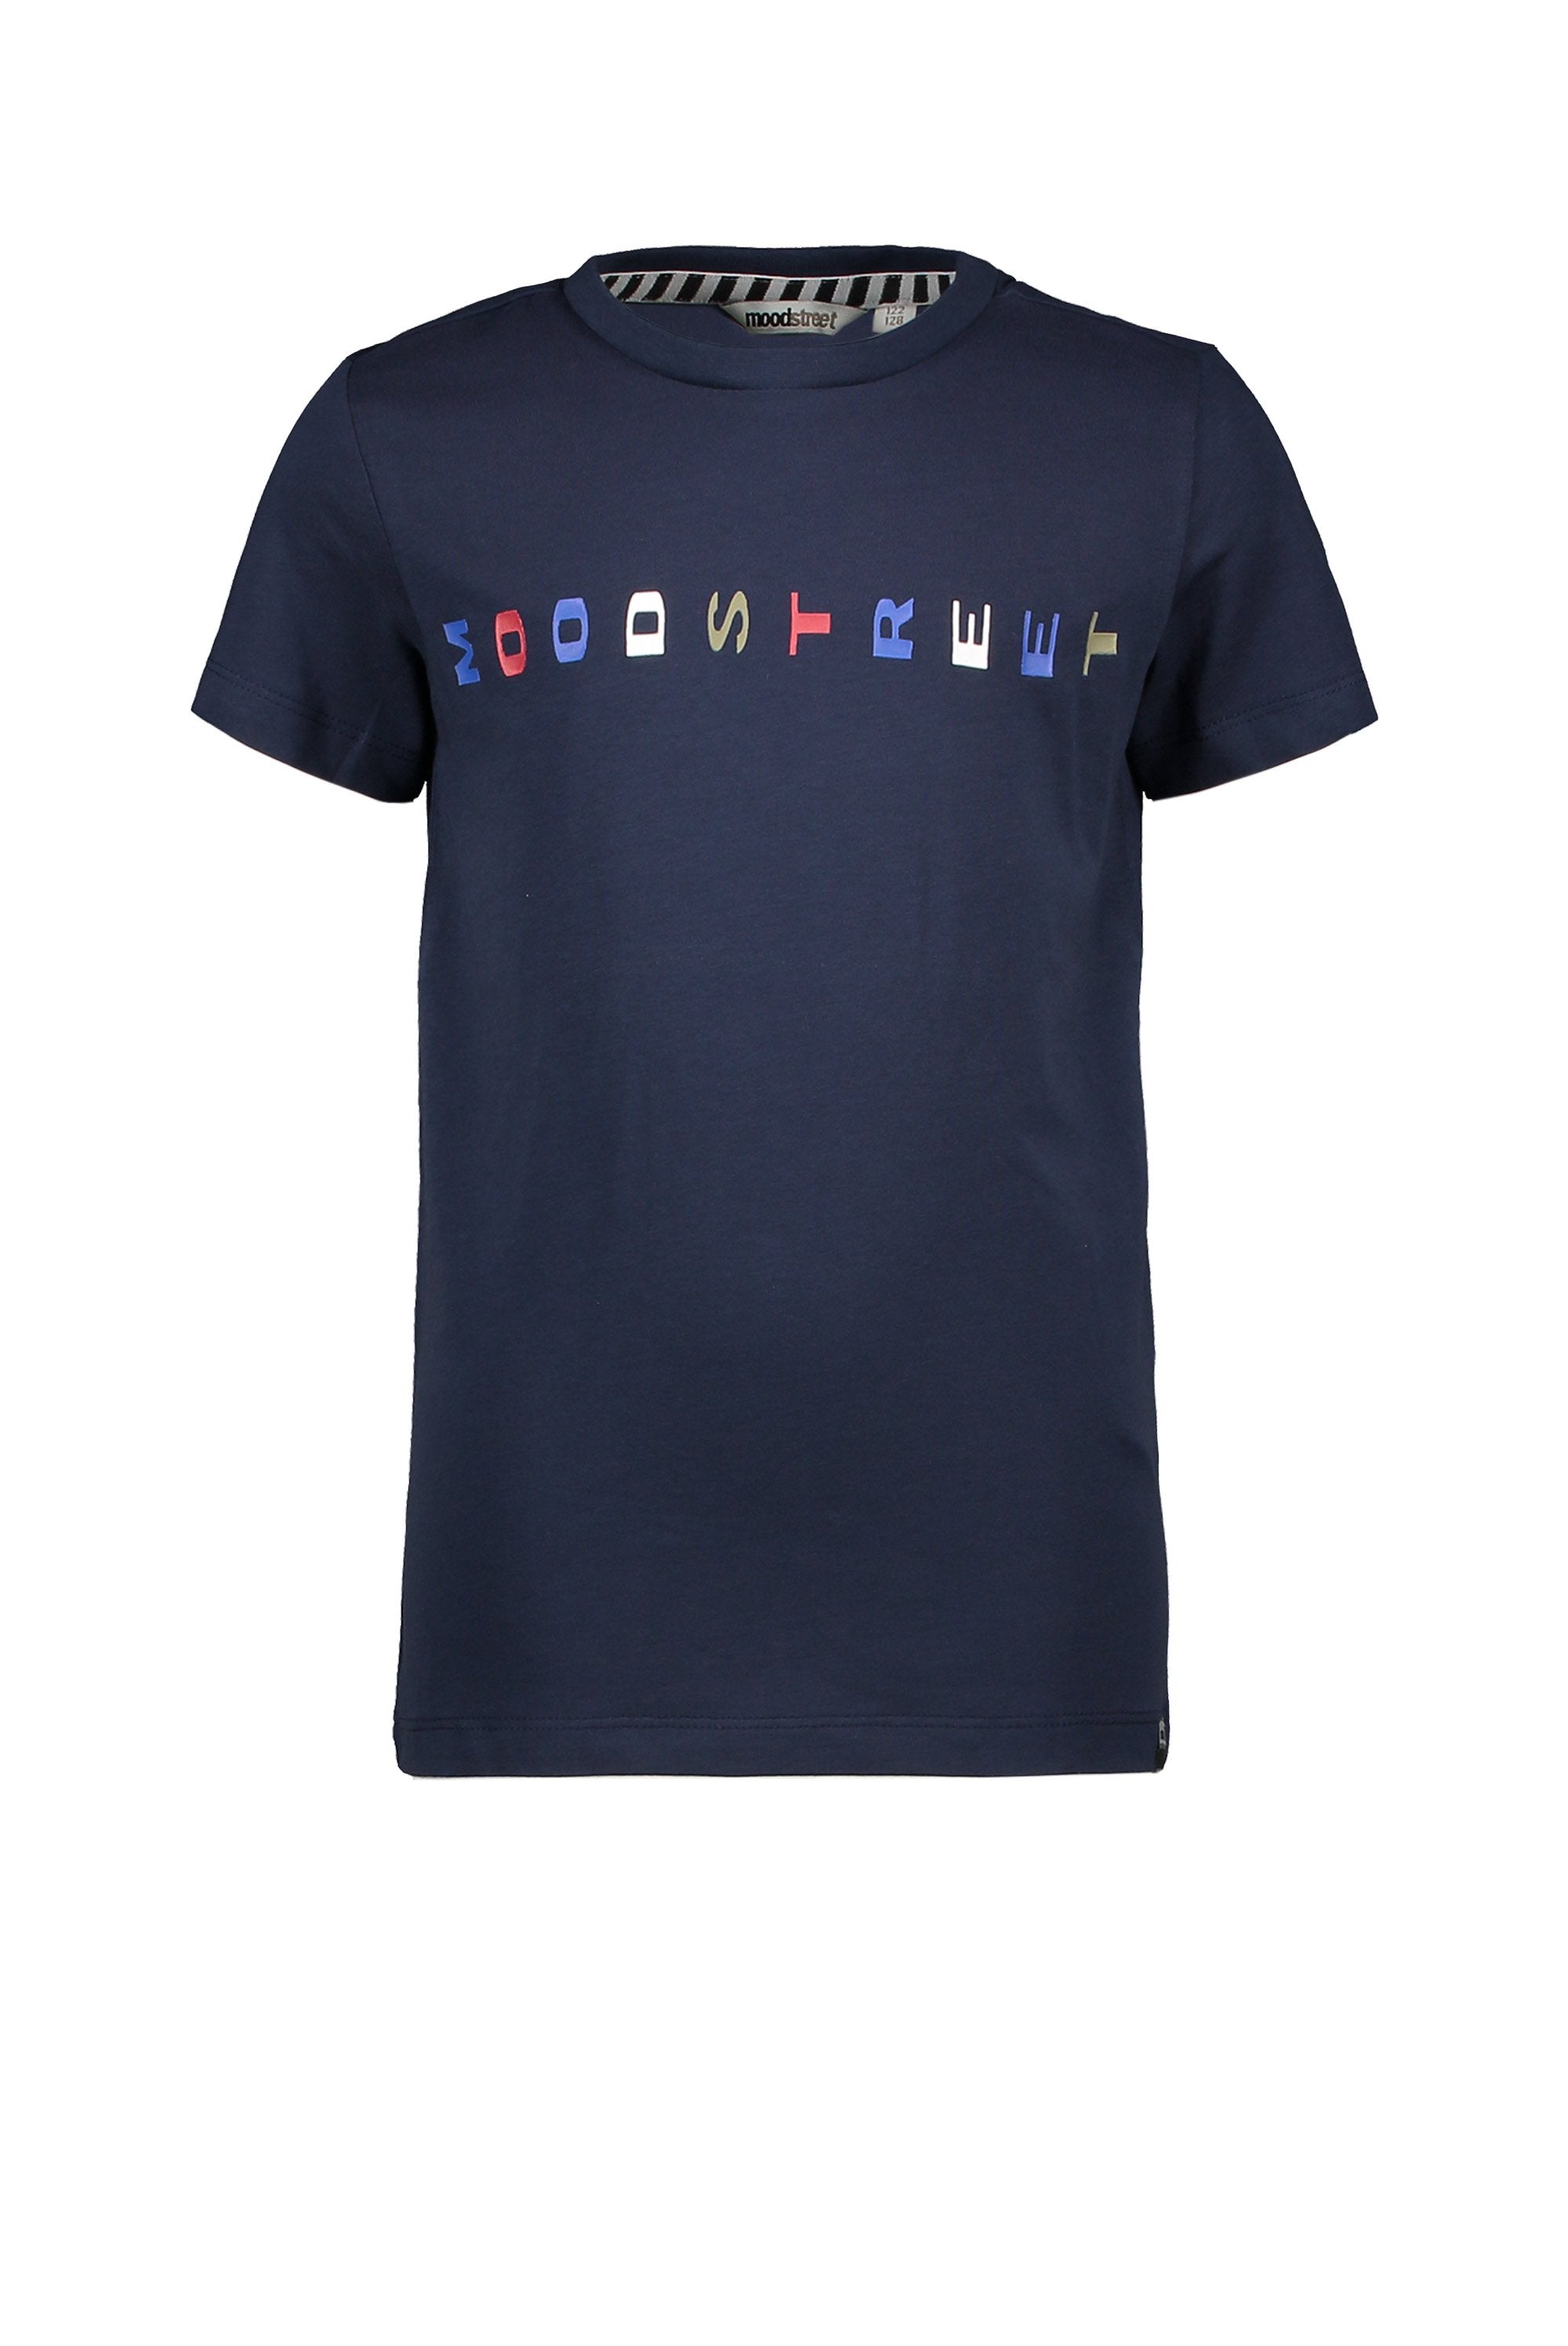 Jongens T-Shirt Chestprint van Moodstreet in de kleur Navy in maat 86/92.